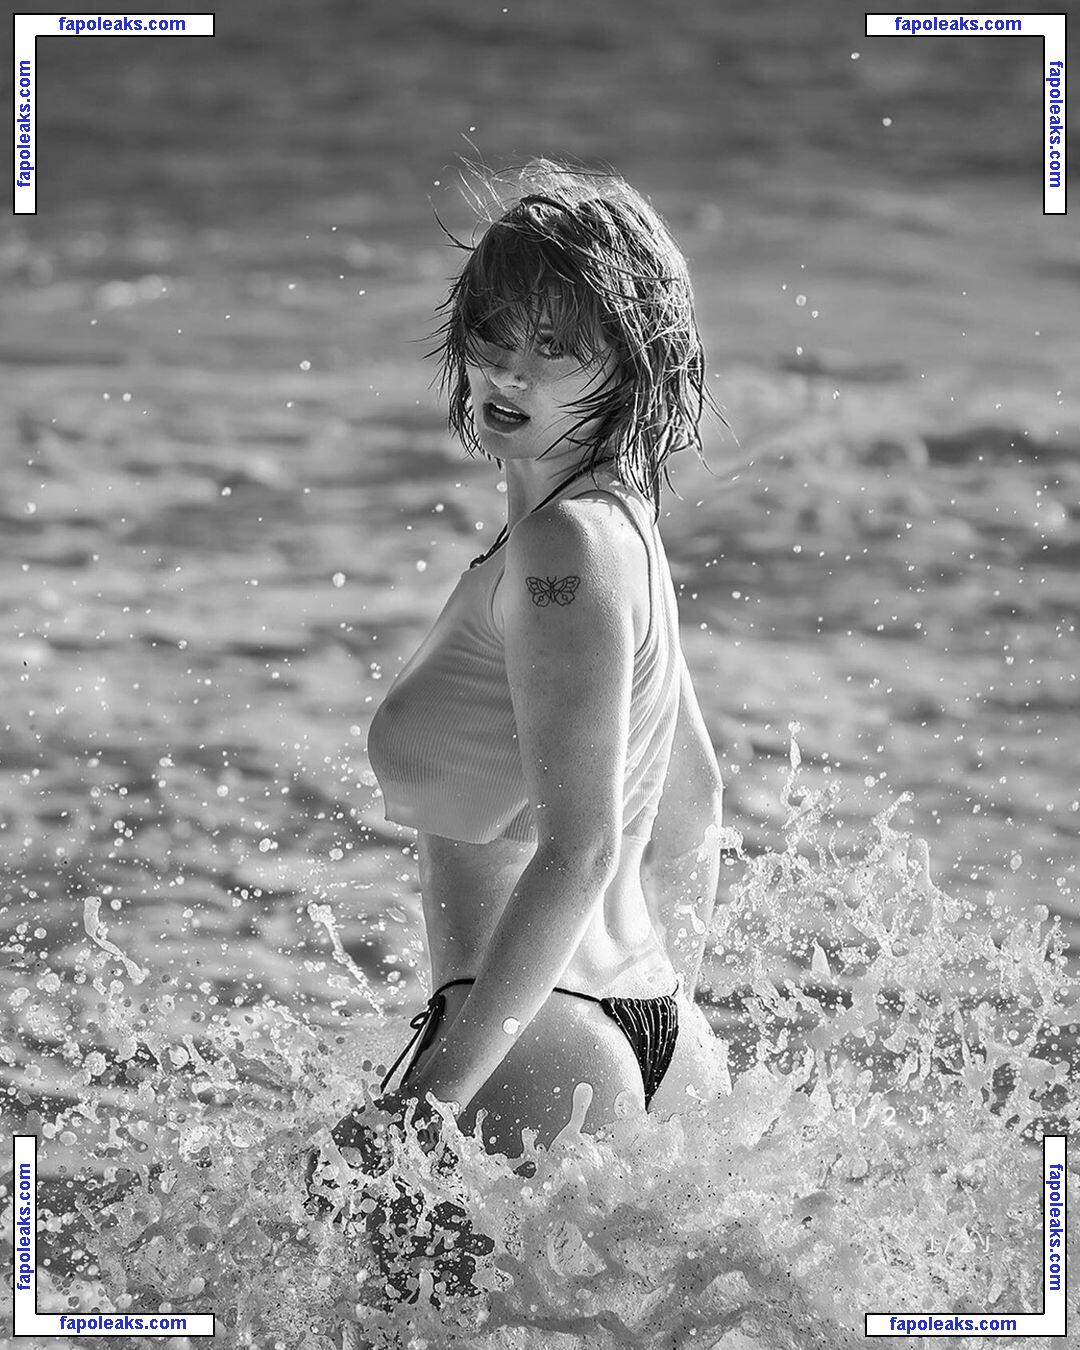 Hannah Mccloud / haileymcleod / hannahgmccloud nude photo #0047 from OnlyFans